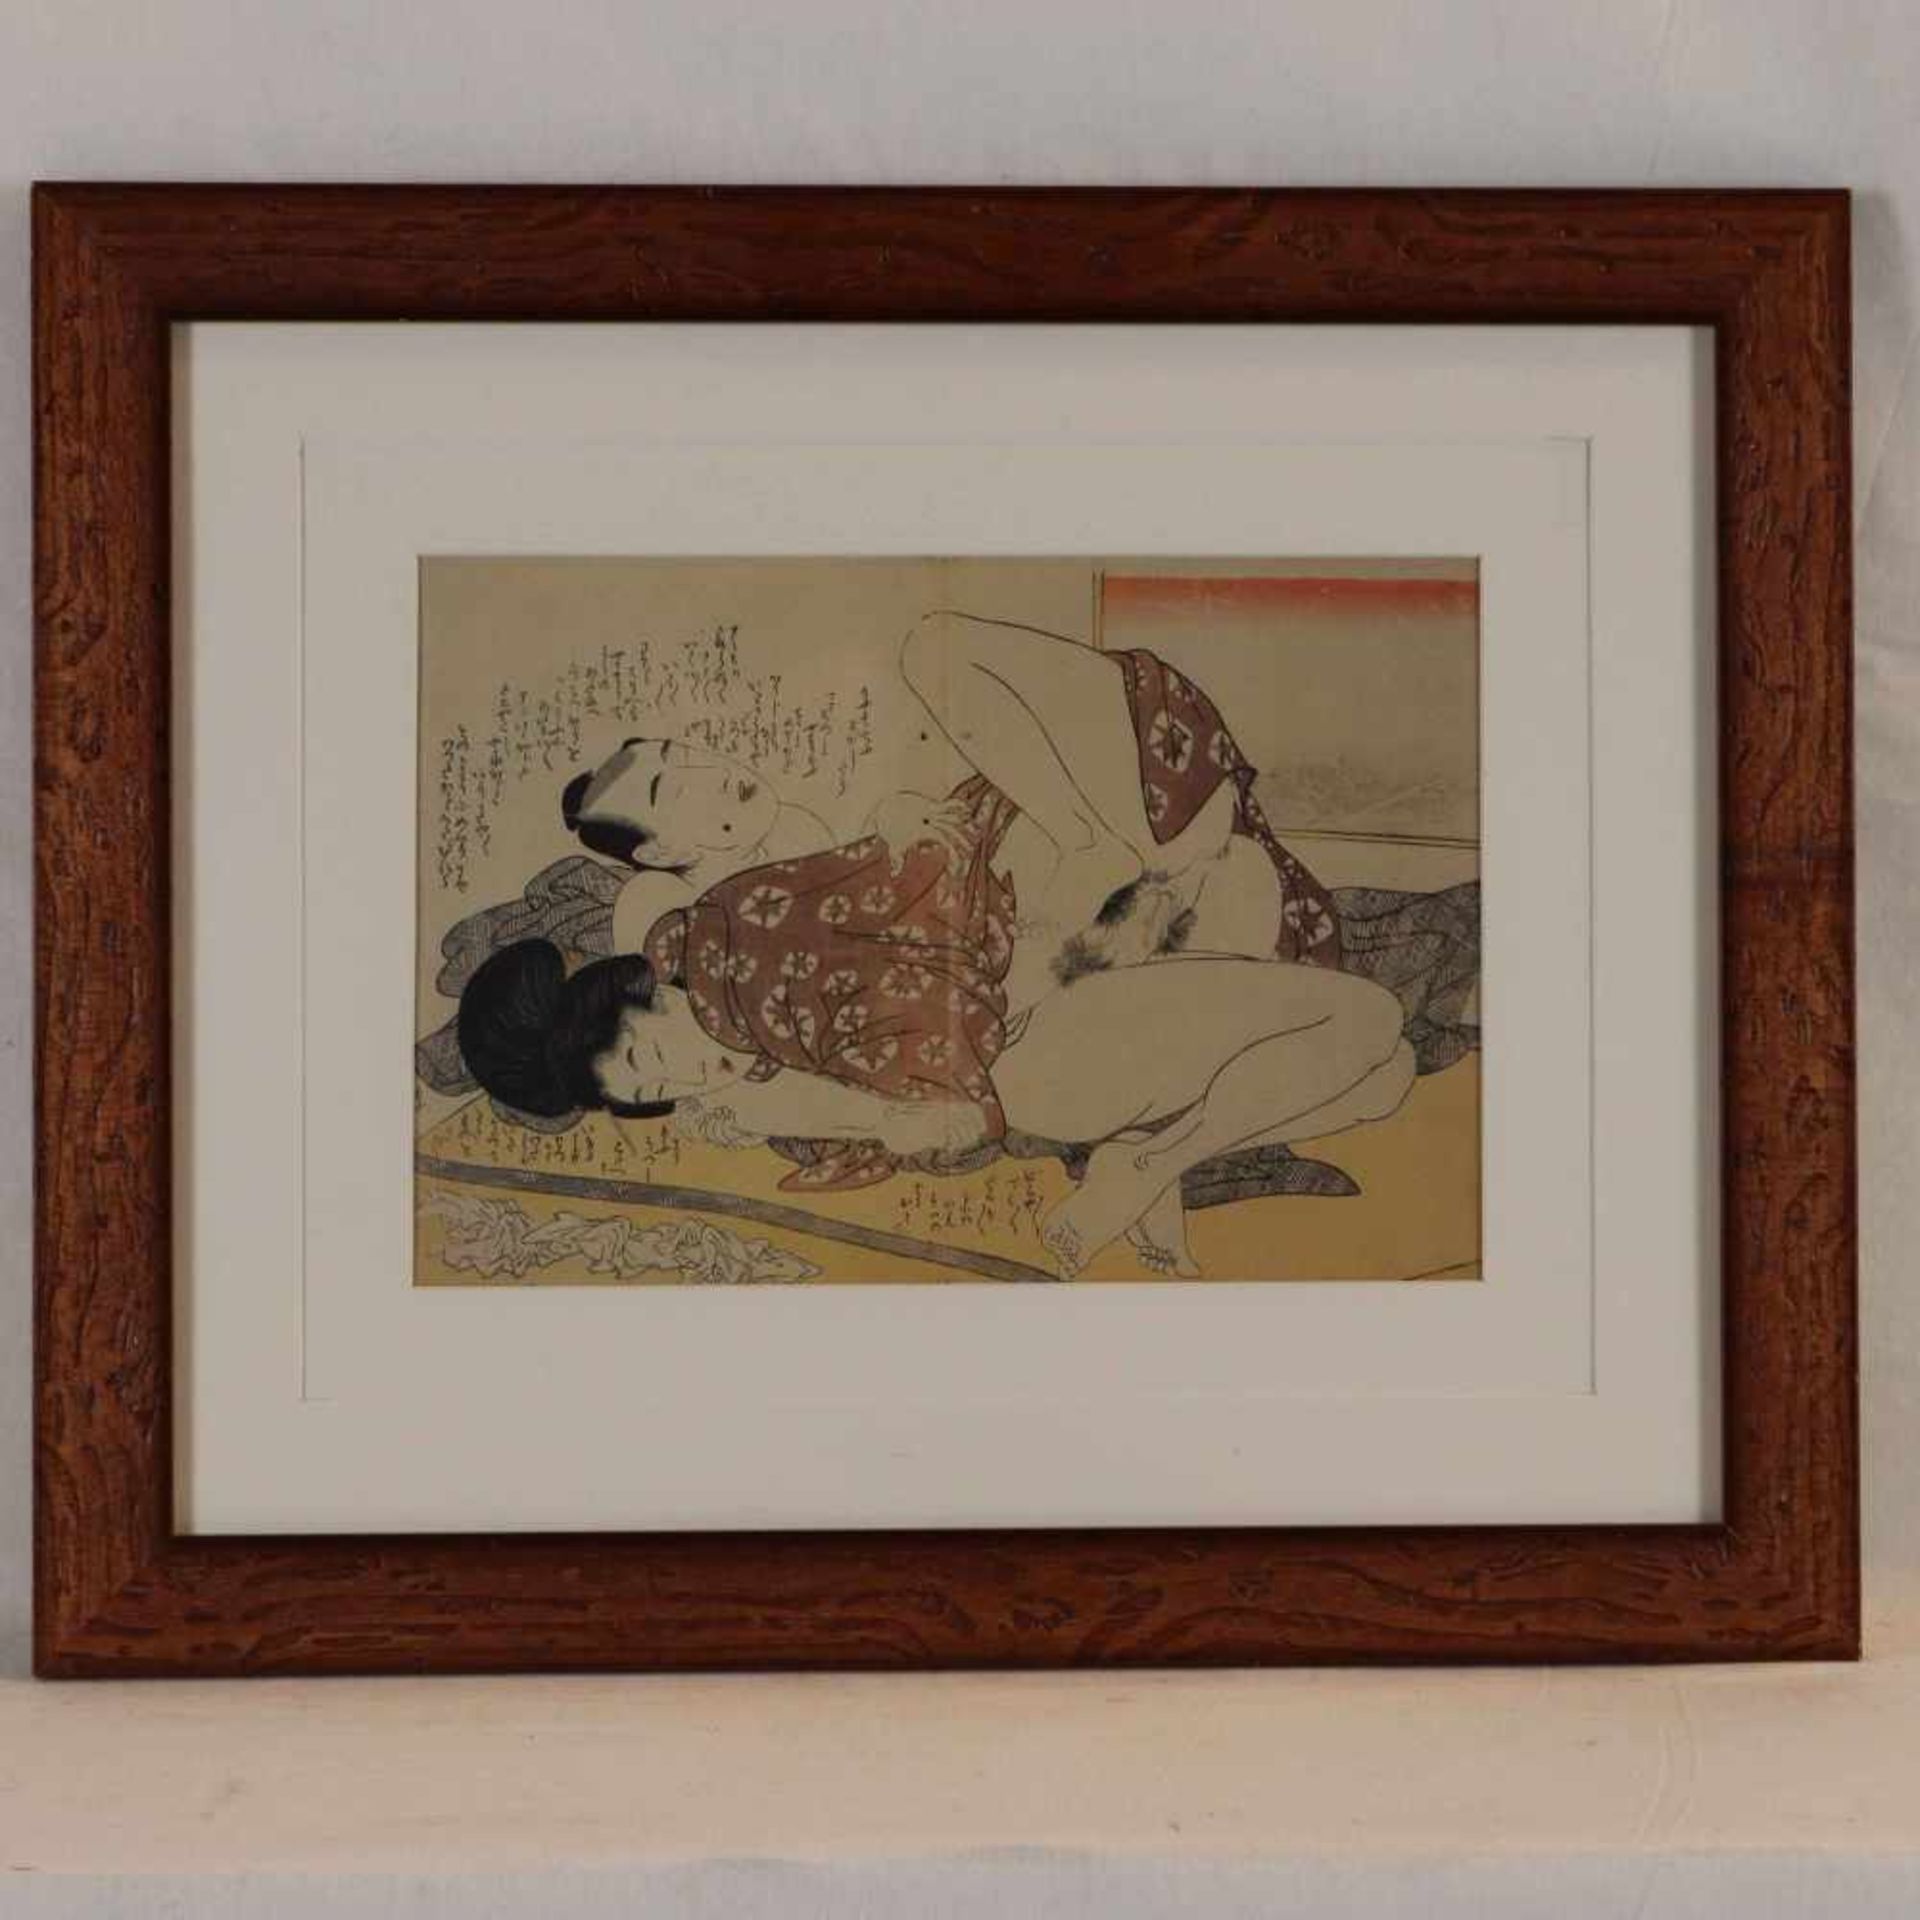 Kitagawa, Utamaro (1753-1806 japanischer Meister des klassischen japanischen Farbholzschnitts) - "